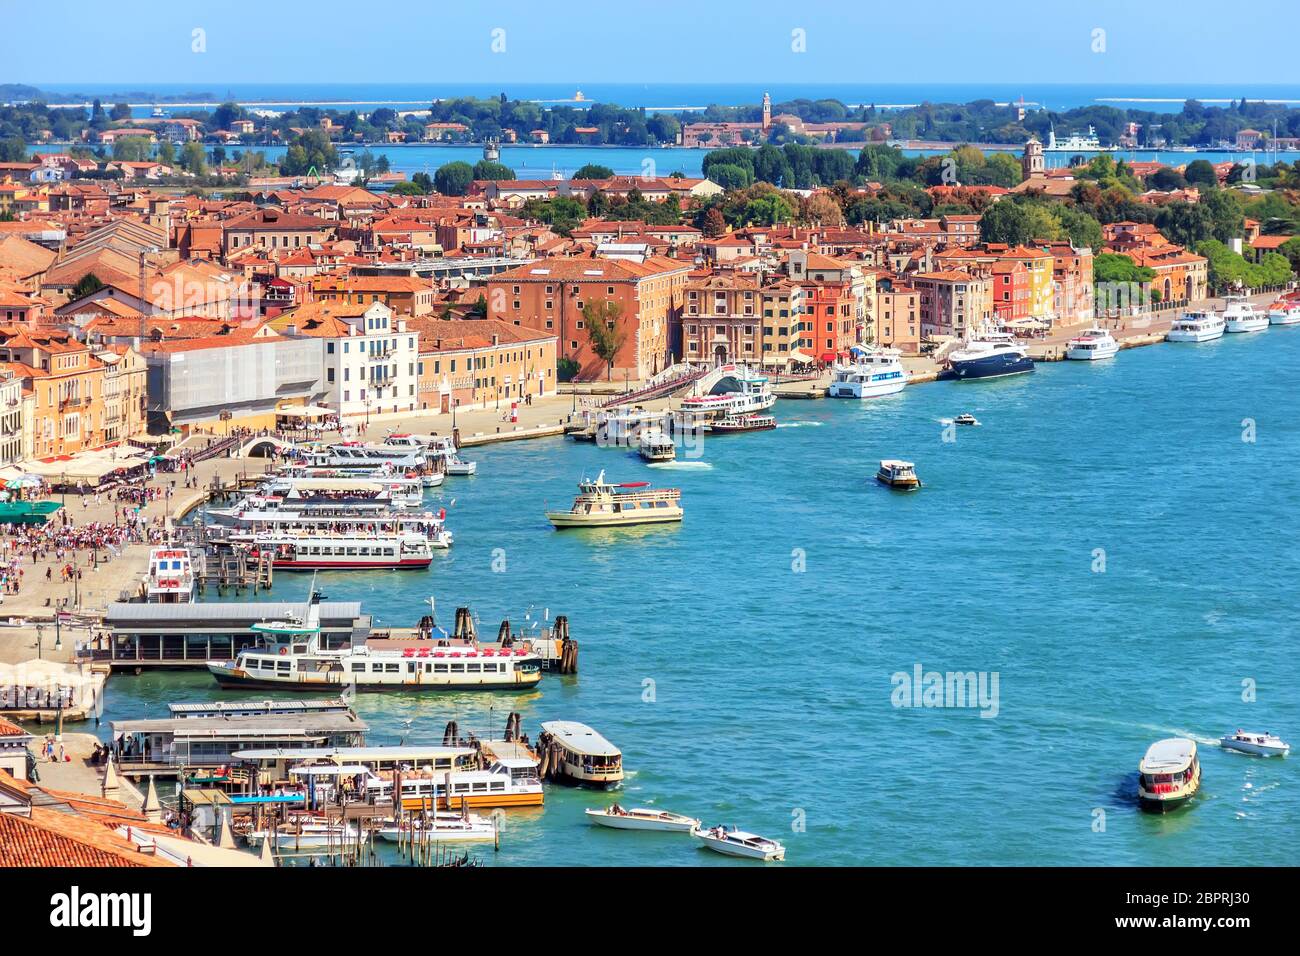 Venetian lagoon and a berth for gondolas and boats, Venice, Italy. Stock Photo